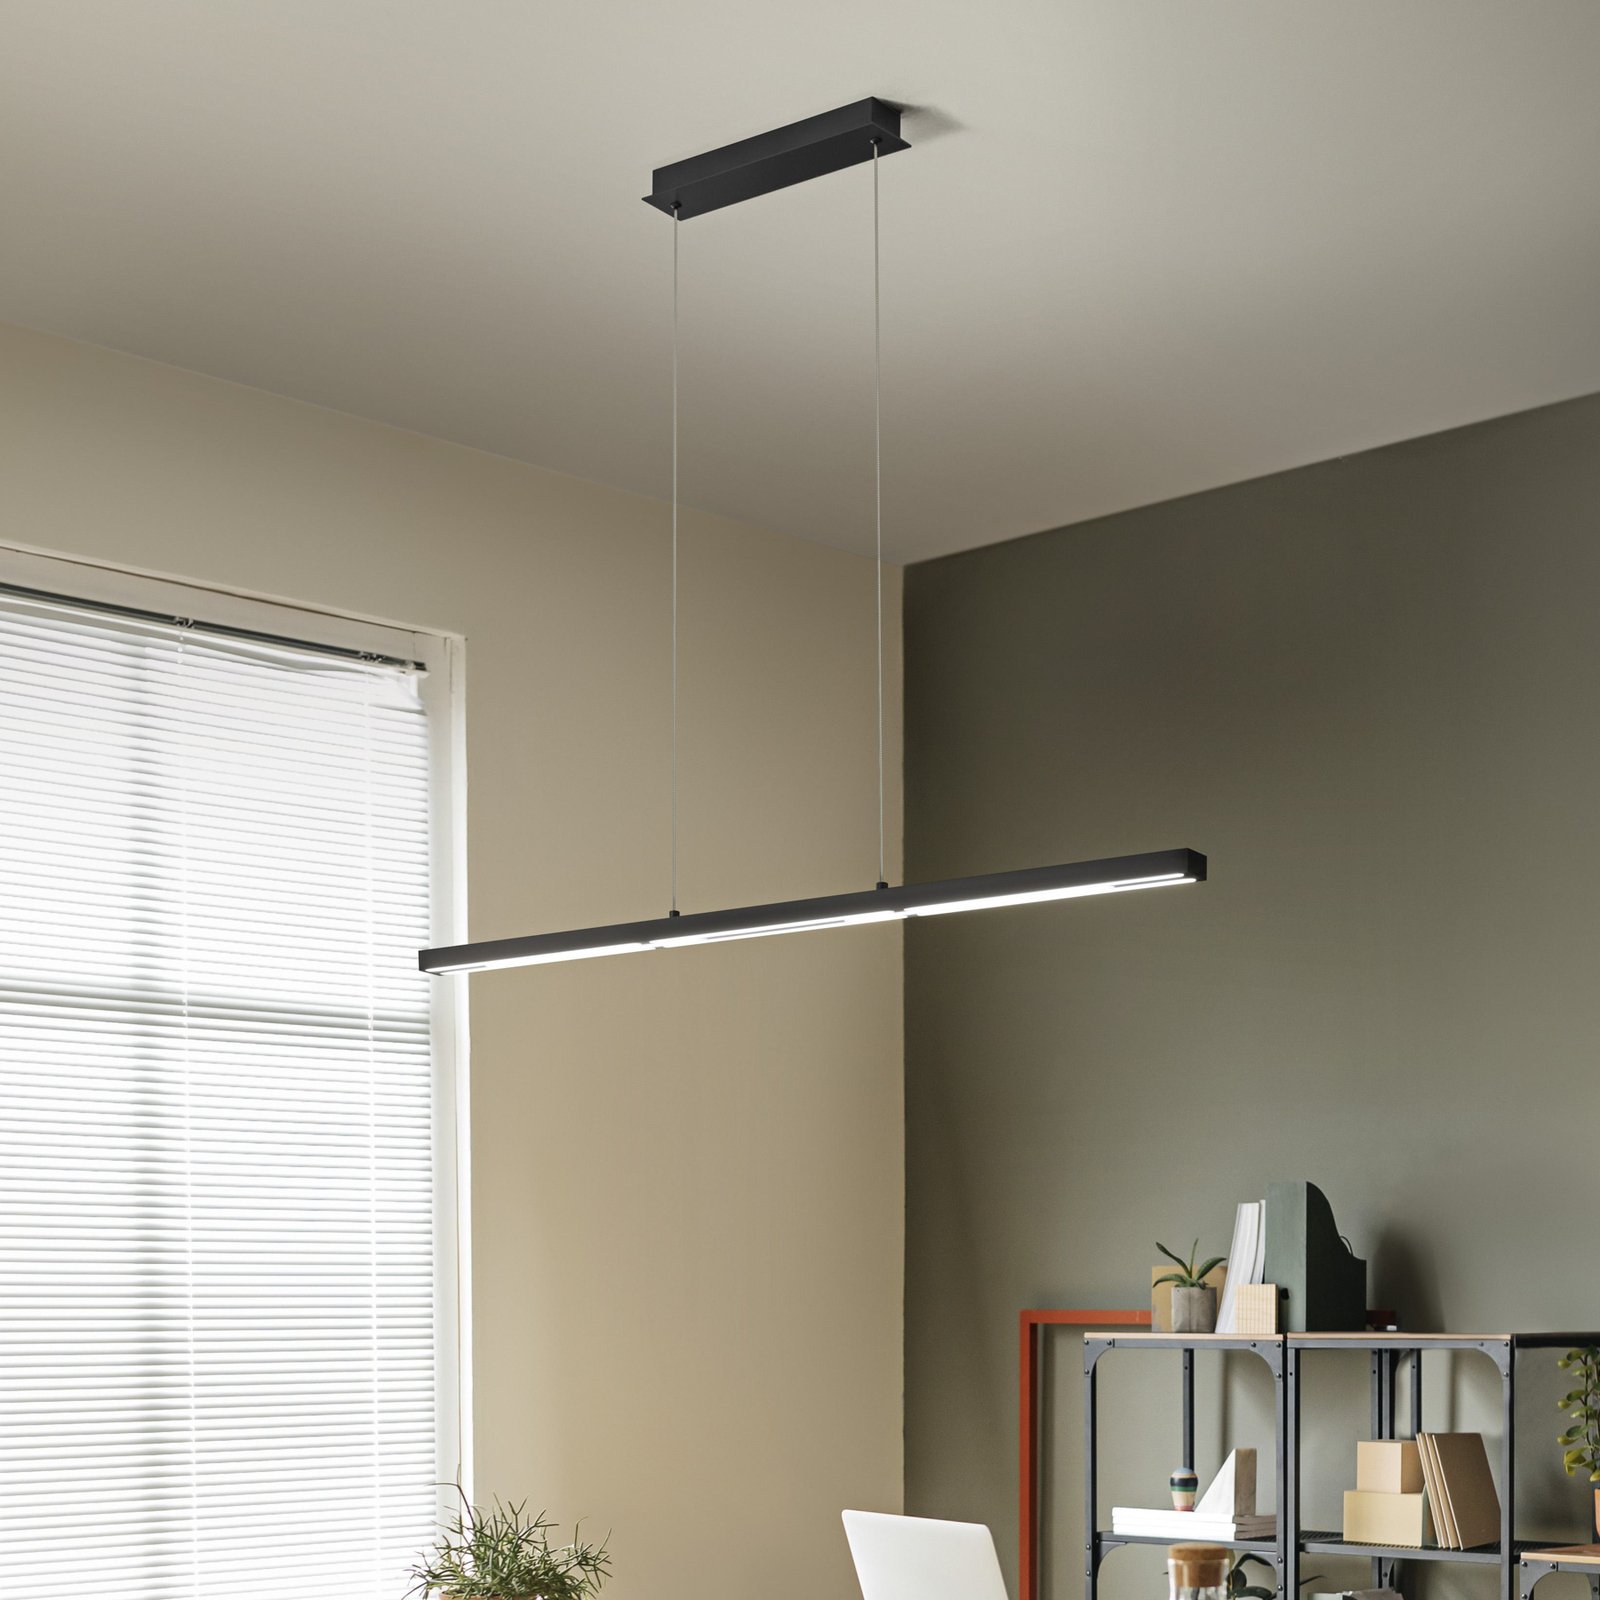 Ling LED viseća svjetiljka, crna, uplight i downlight, prigušiva